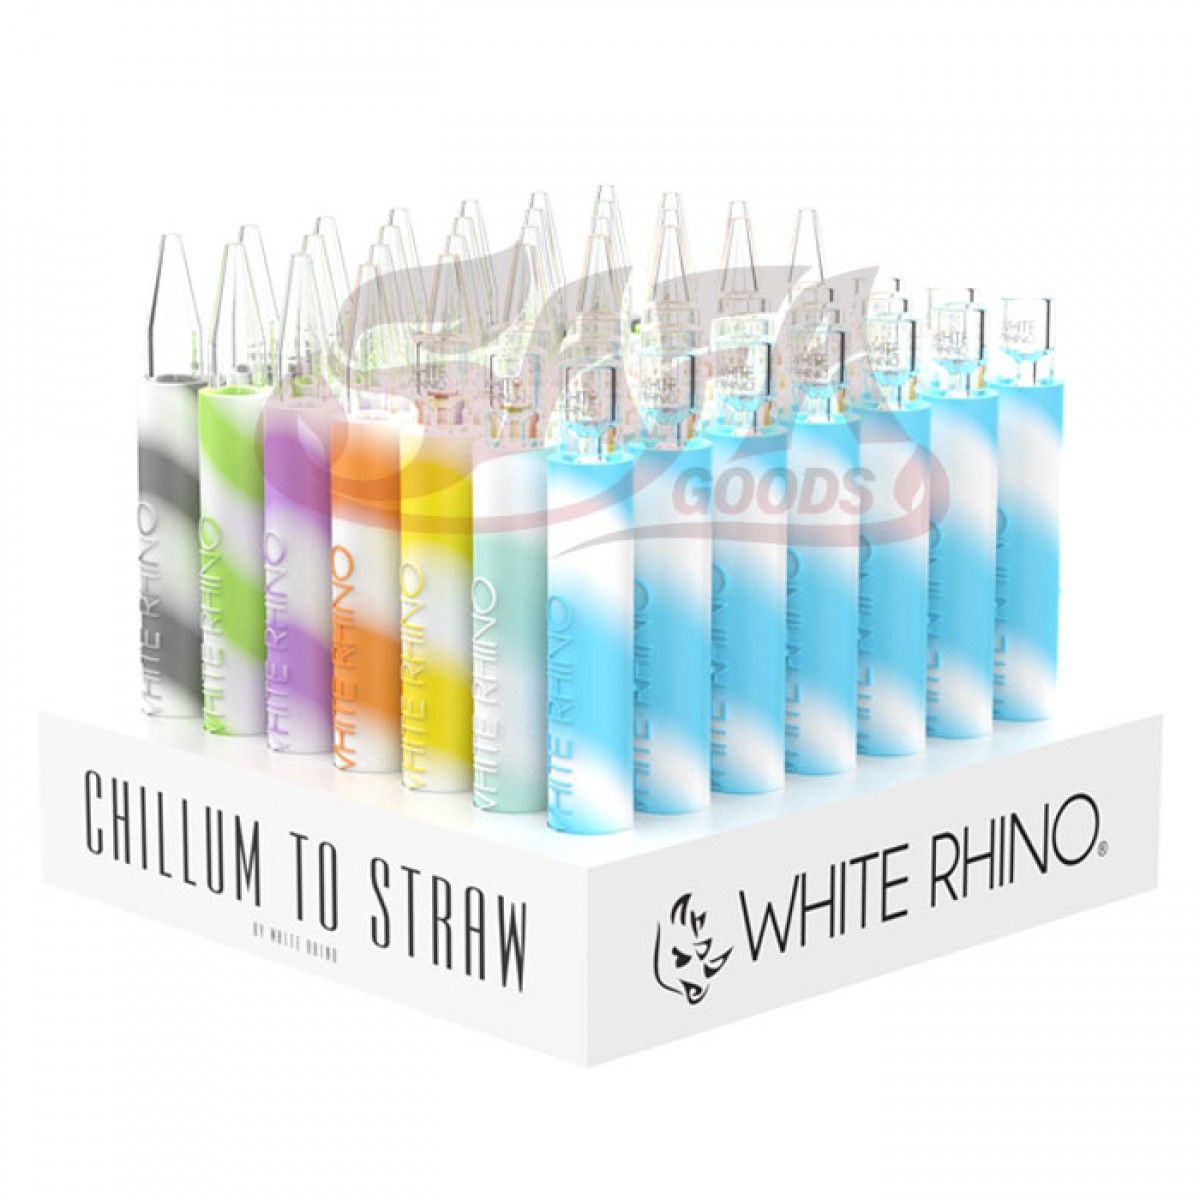 White Rhino Chillum to Straw Kits 49ct